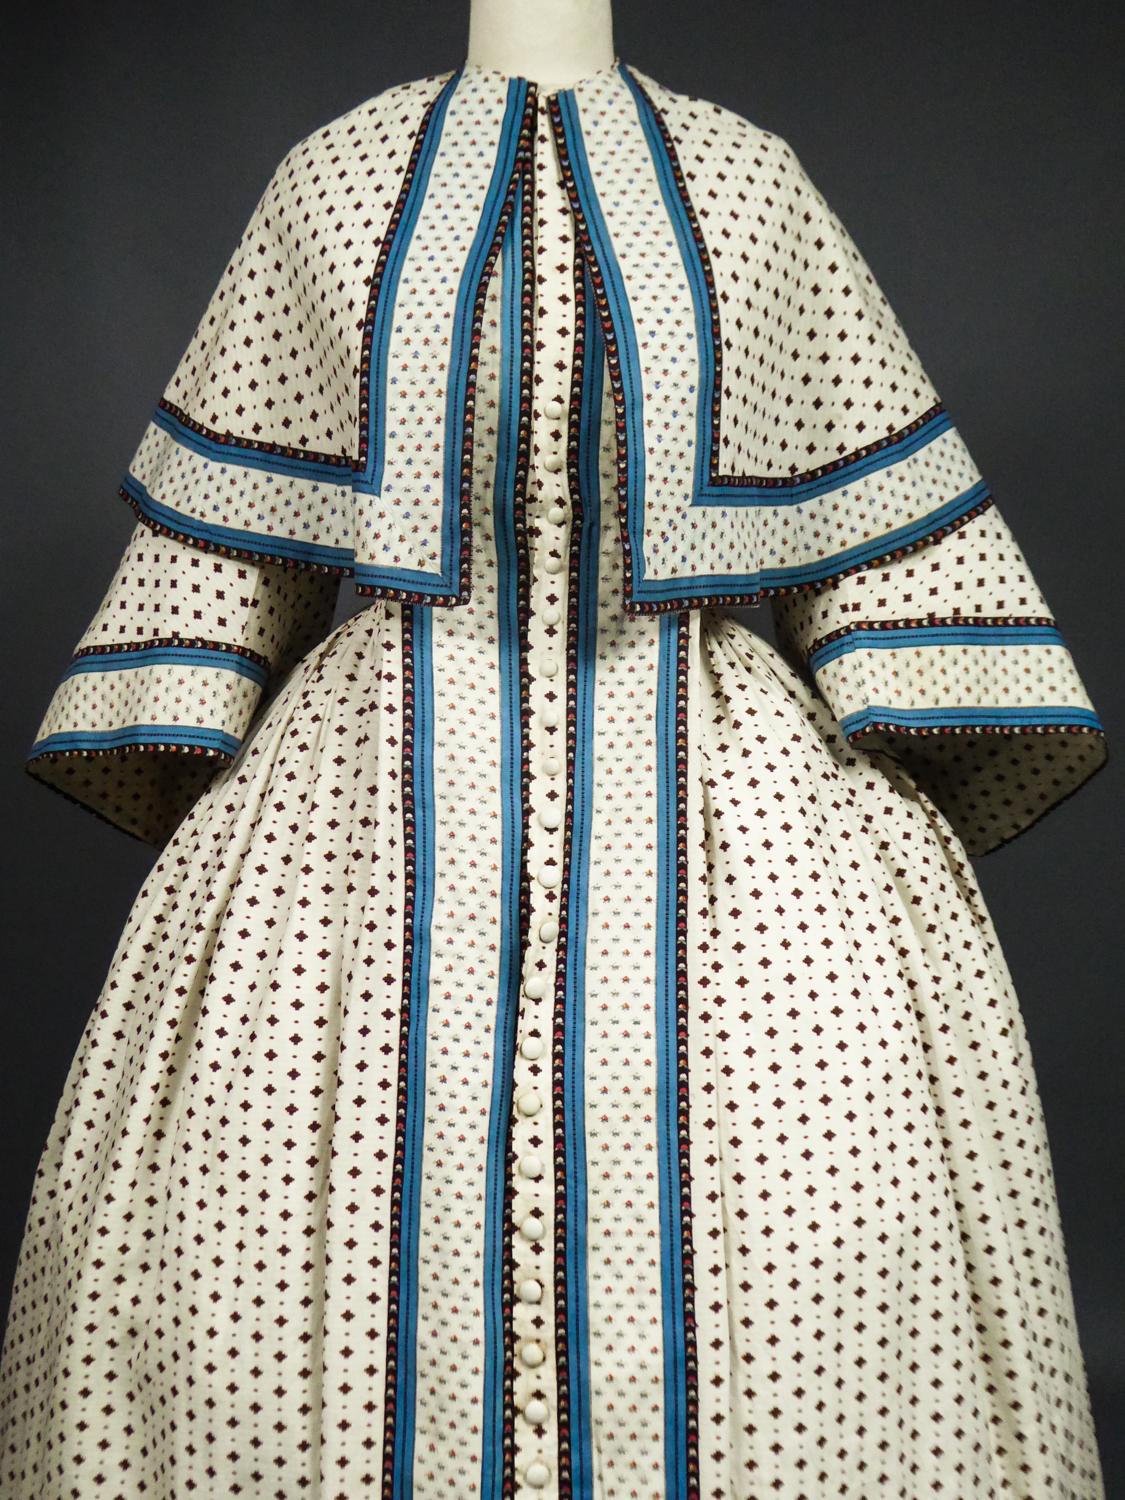 A Printed Cotton Crinoline Day Dress - France Napoleon III Period Circa 1865 9